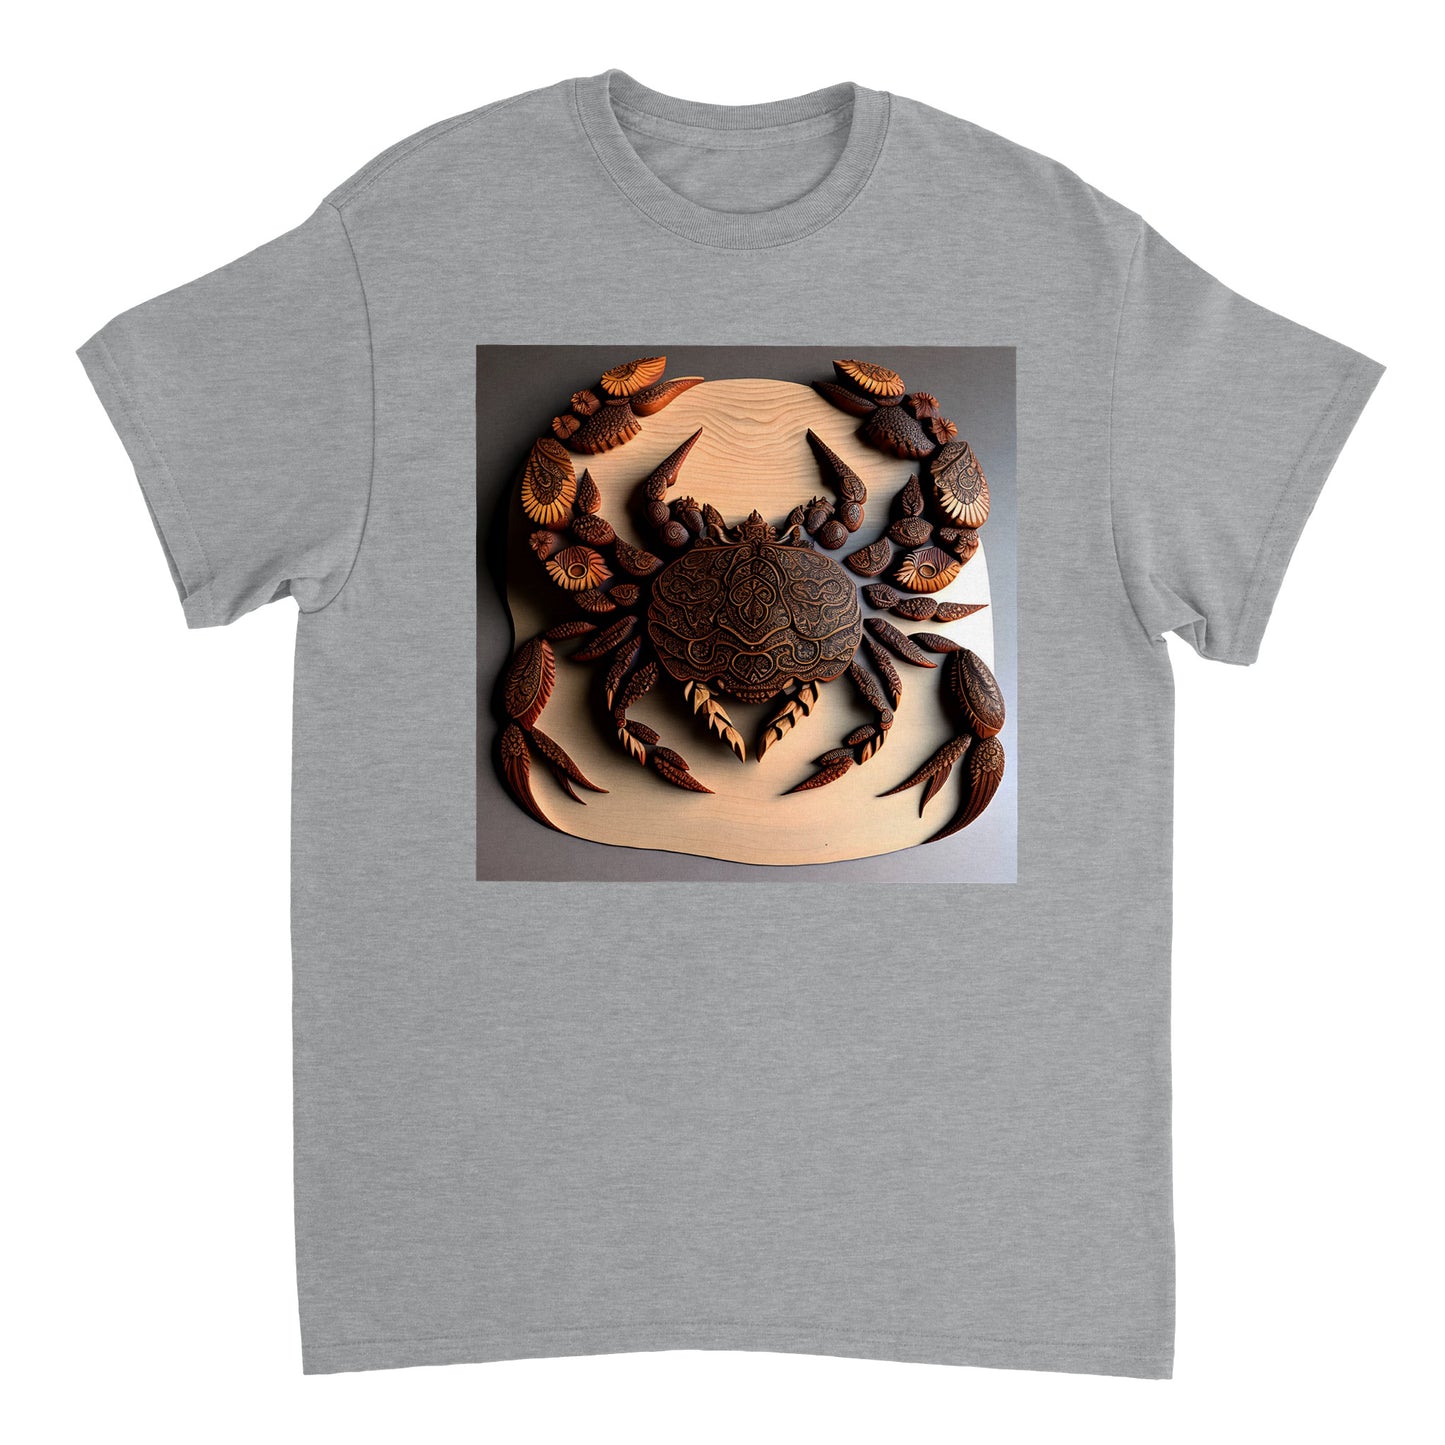 3D Wooden Animal Art - Heavyweight Unisex Crewneck T-shirt 67